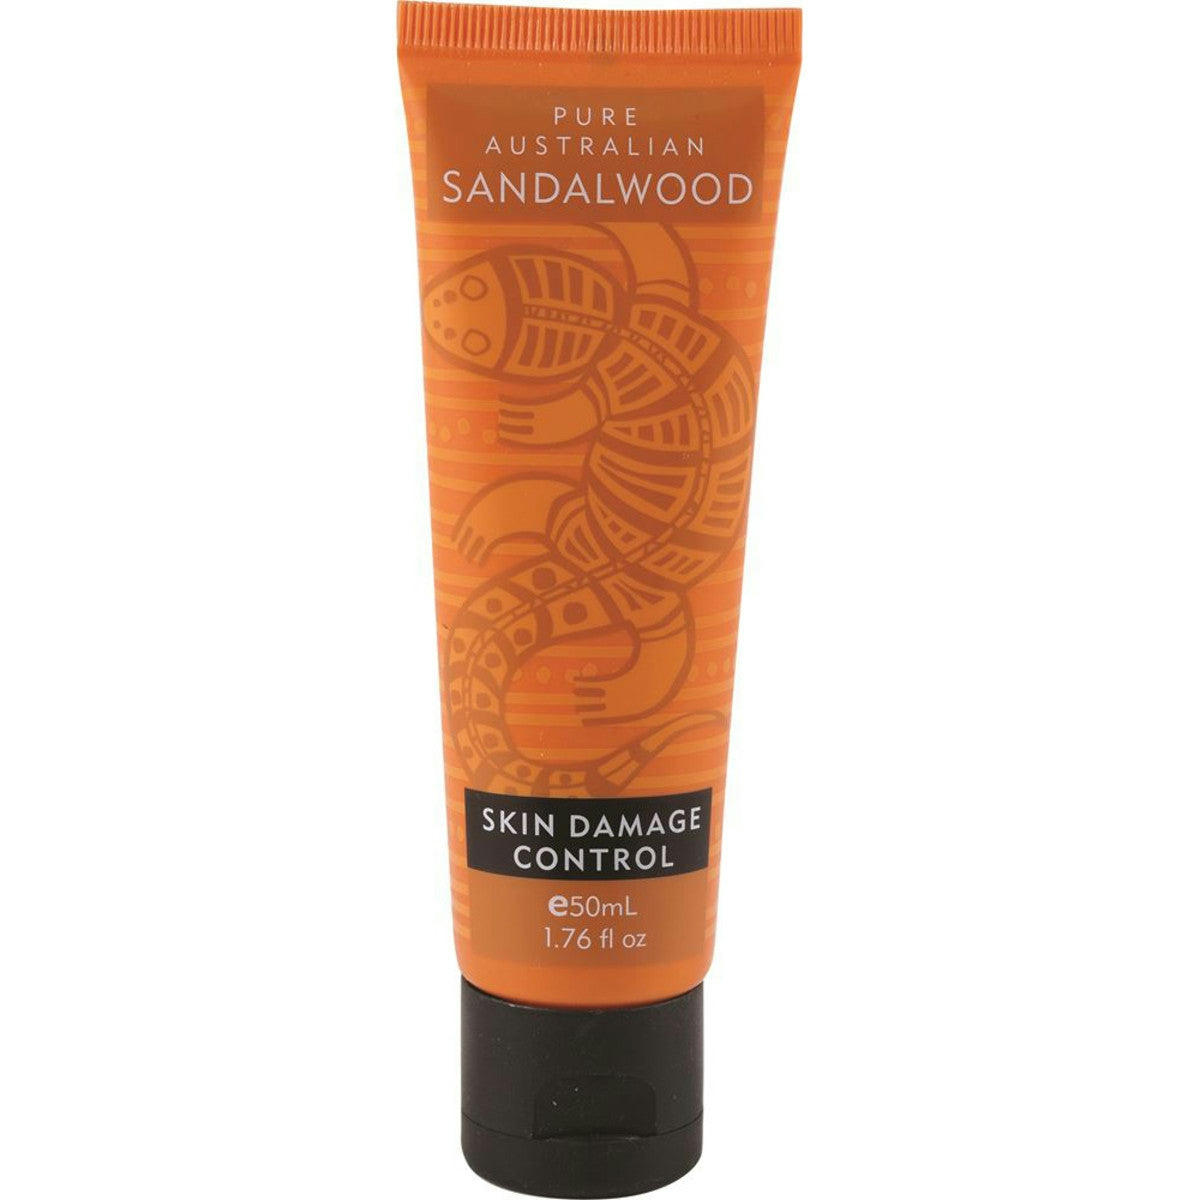 image of Pure Australian Sandalwood Skin Damage Control 50ml on white background